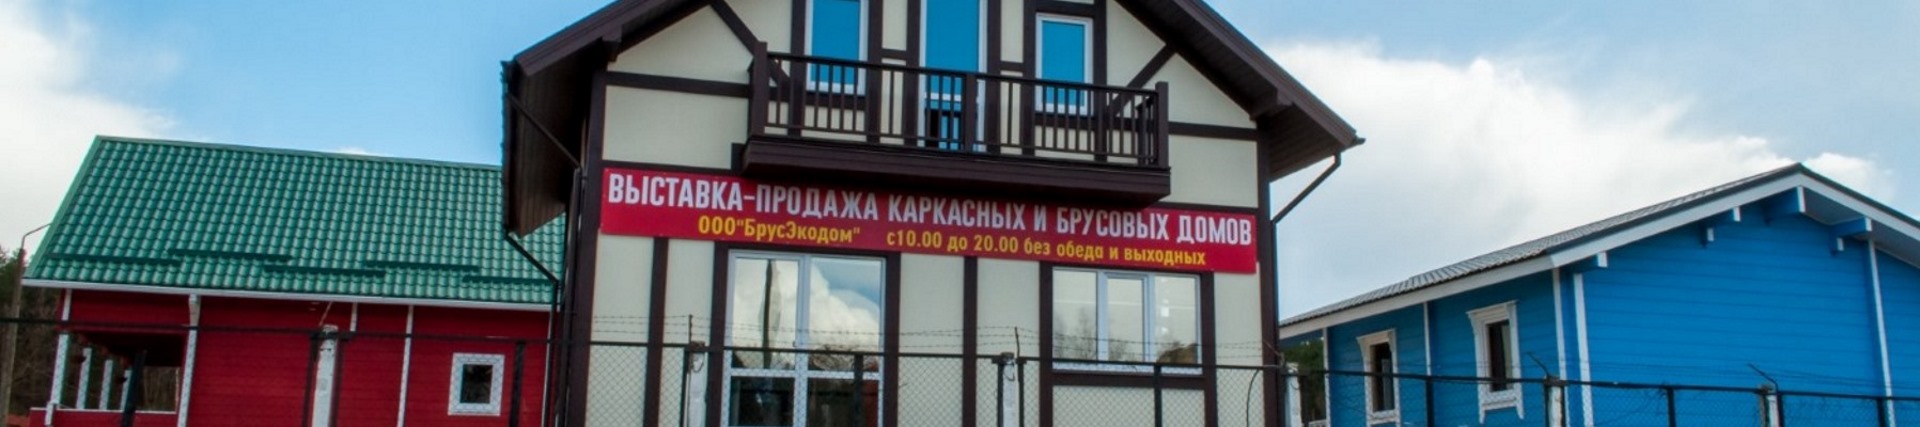 Выставка домов в Минске